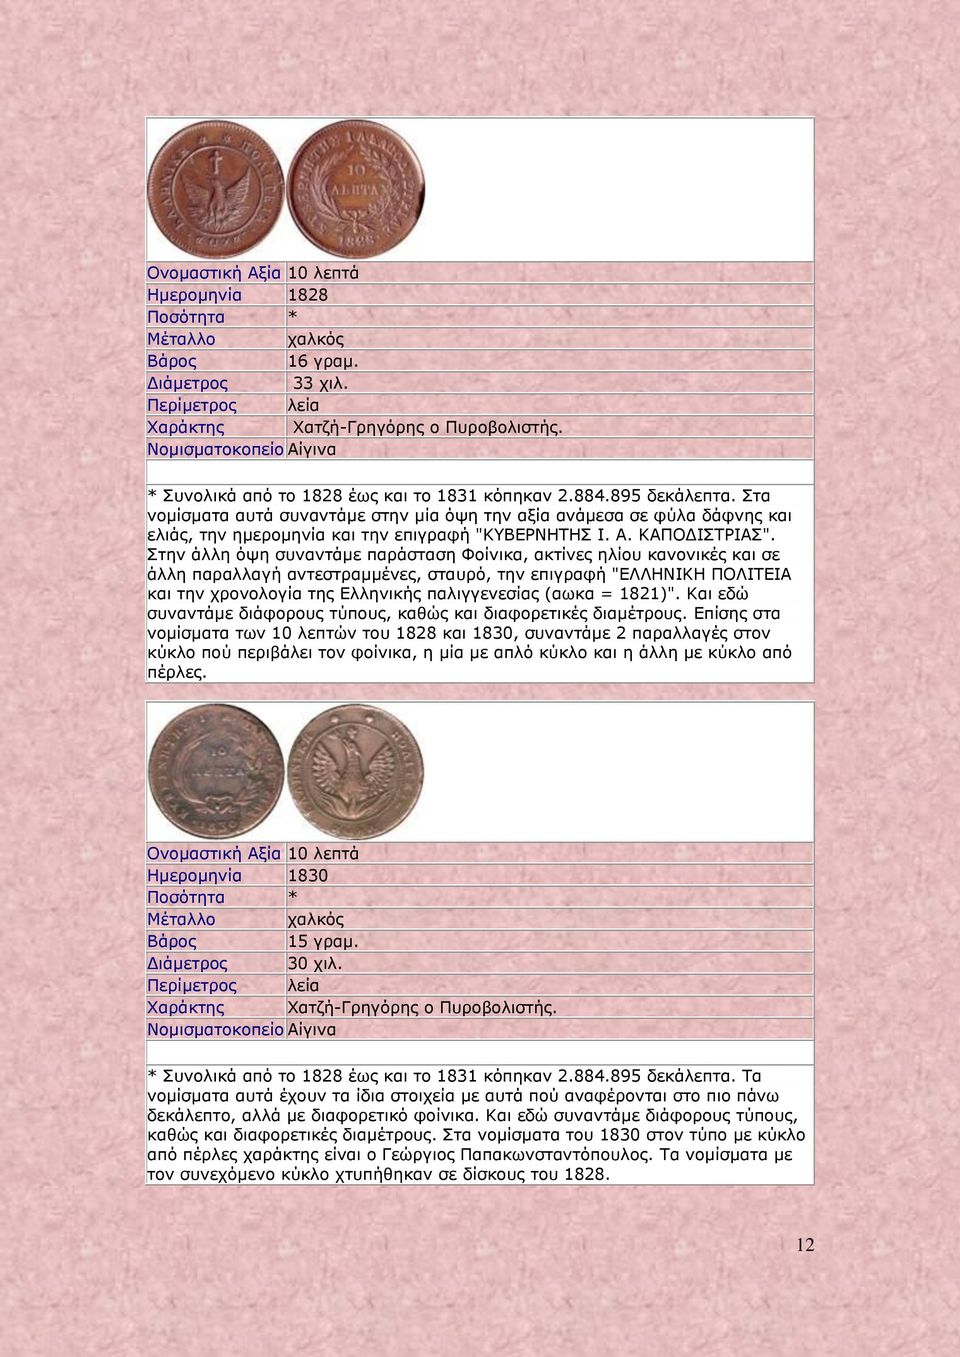 Στα νομίσματα αυτά συναντάμε στην μία όψη την αξία ανάμεσα σε φύλα δάφνης και ελιάς, την ημερομηνία και την επιγραφή "ΚΥΒΕΡΝΗΤΗΣ Ι. Α. ΚΑΠΟΔΙΣΤΡΙΑΣ".